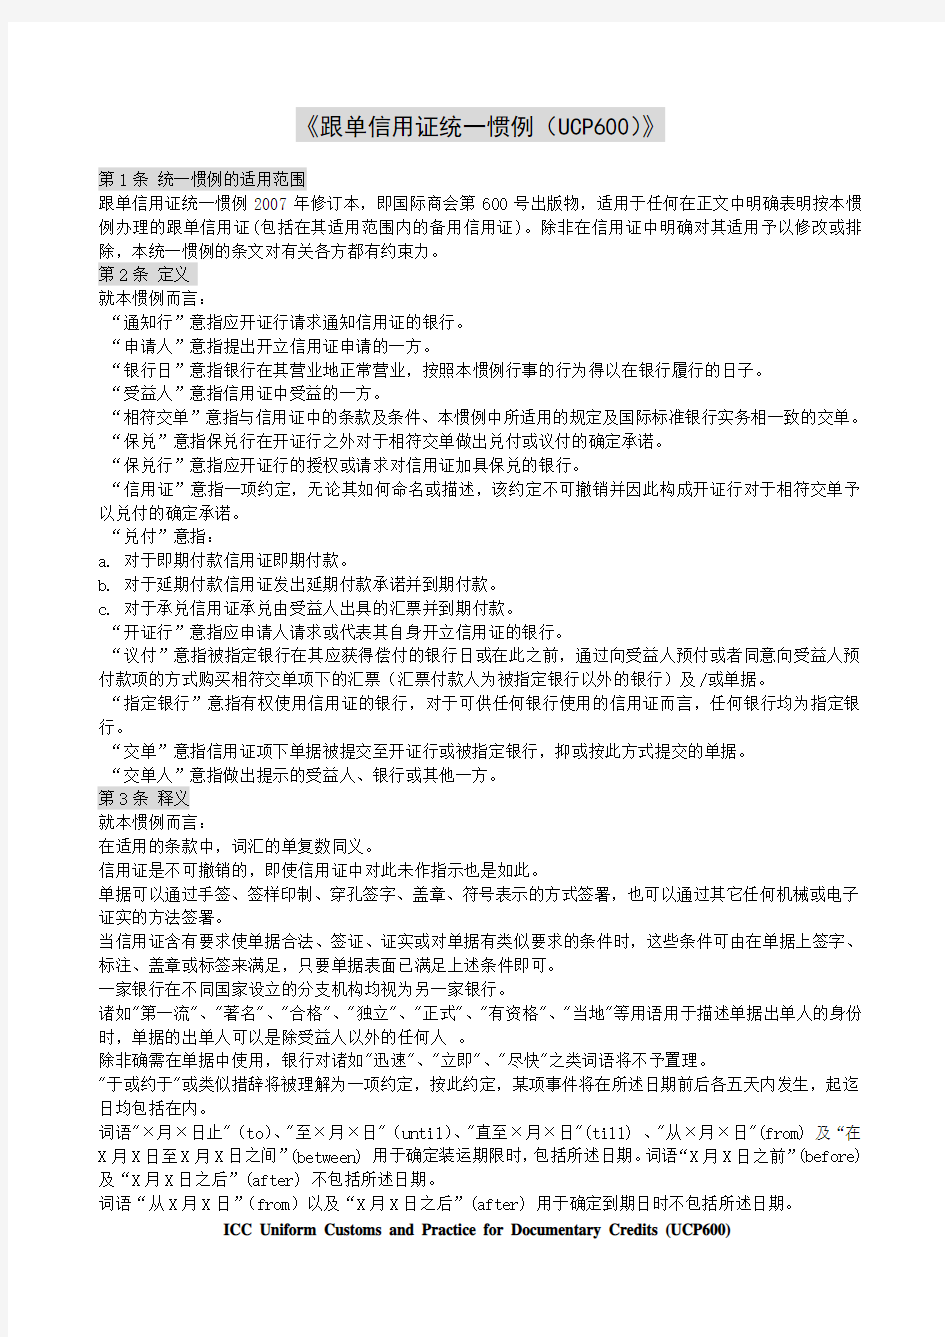 《跟单信用证统一惯例中文版》(UCP600)